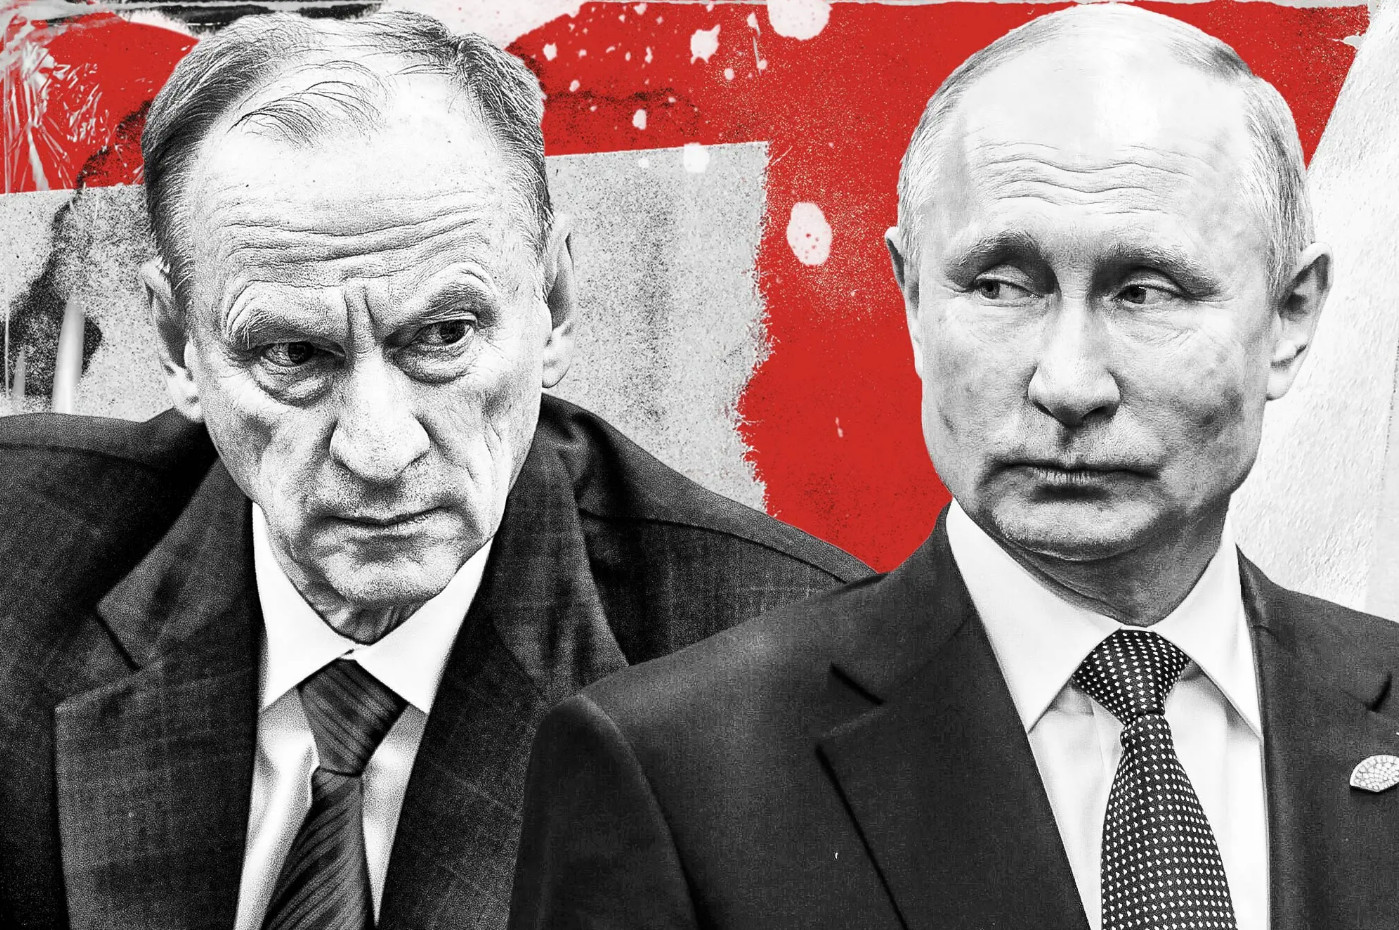 Νικολάι Πατρούσεφ: Το alter ego του Βλαντίμιρ Πούτιν - Ο δεύτερος πιο ισχυρός άνδρας στη Ρωσία